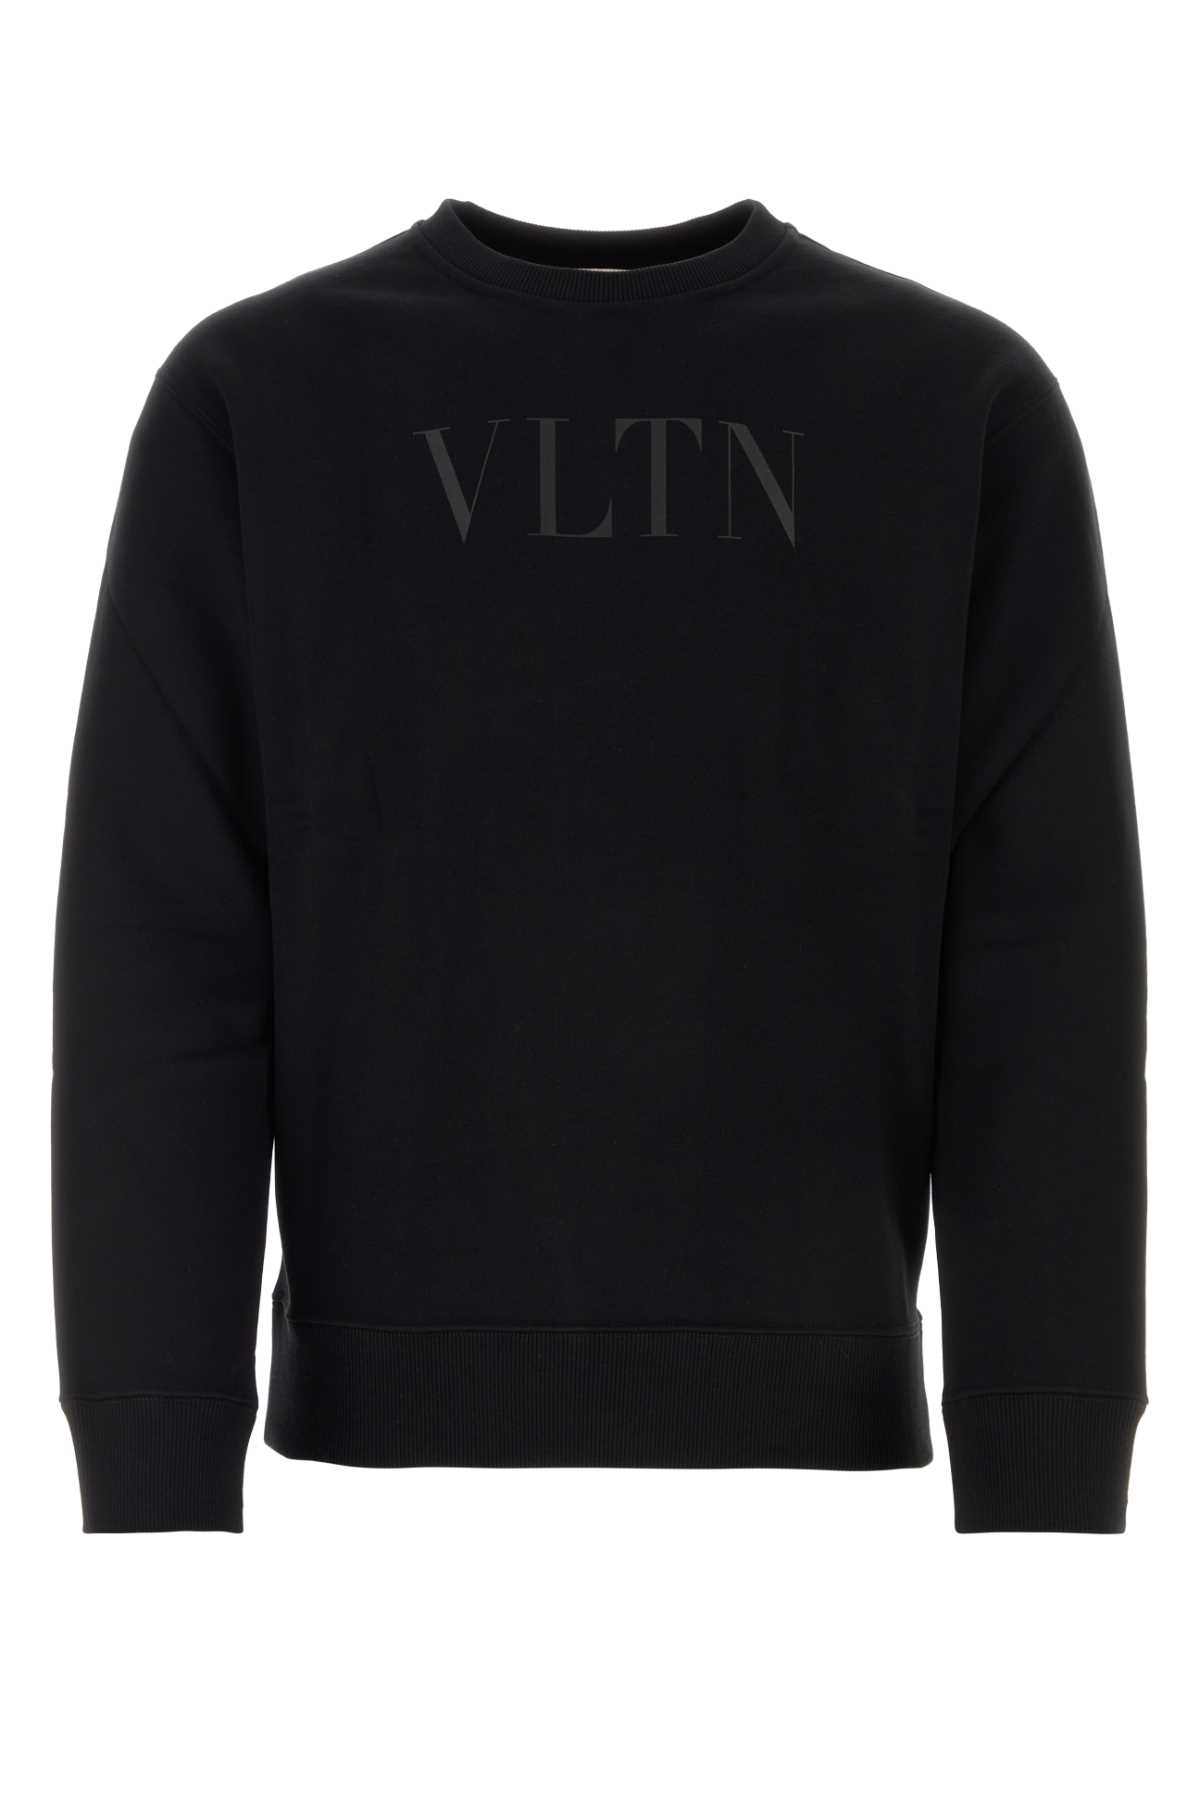 Valentino Black Cotton Sweatshirt In Nerner